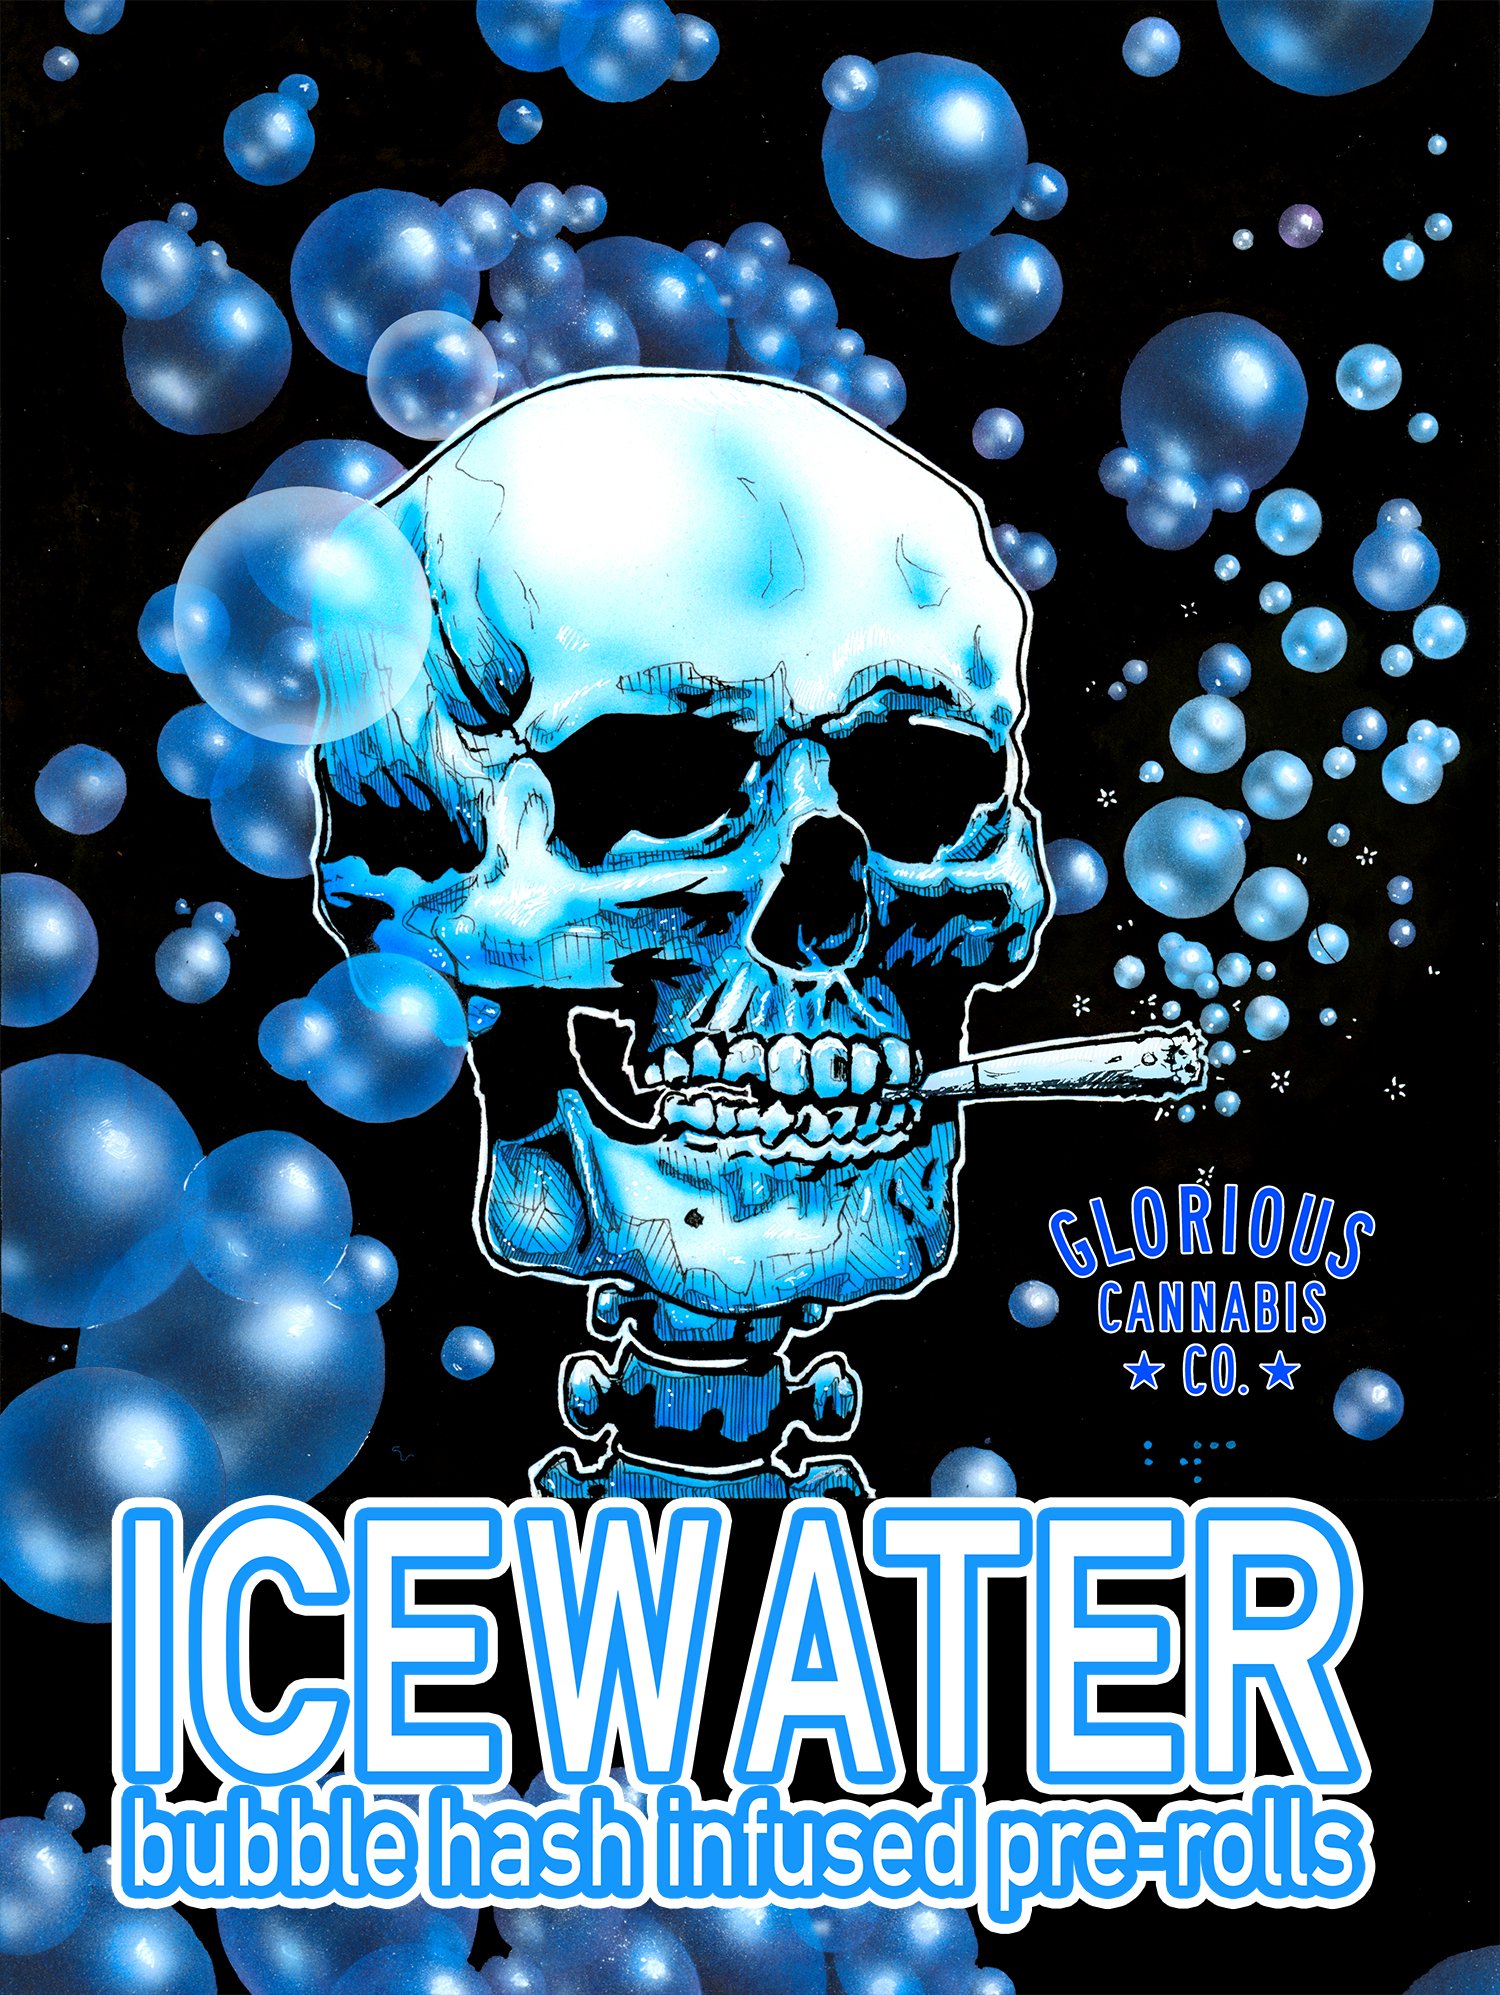 Icewater below copy.jpg